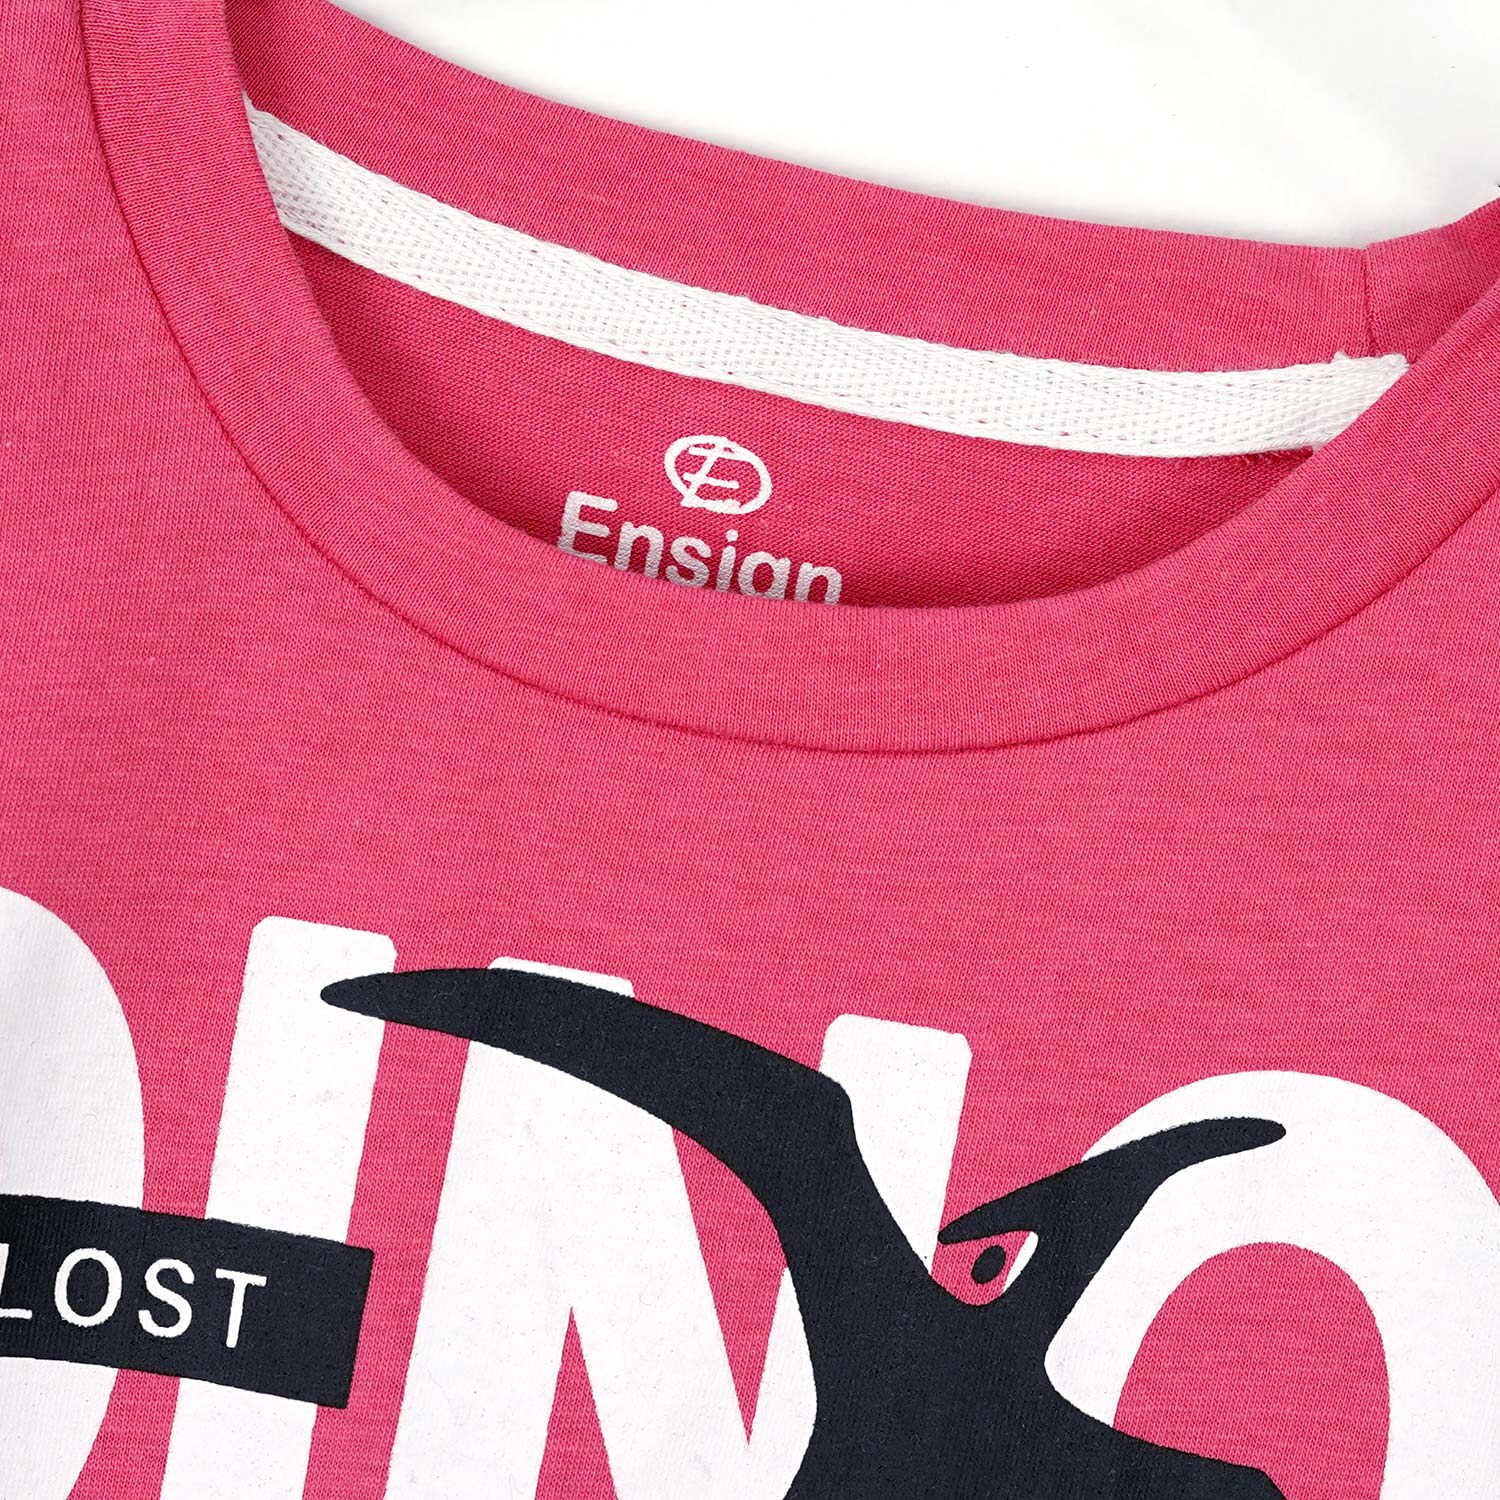 Dino Printed T-shirt & Shorts Set